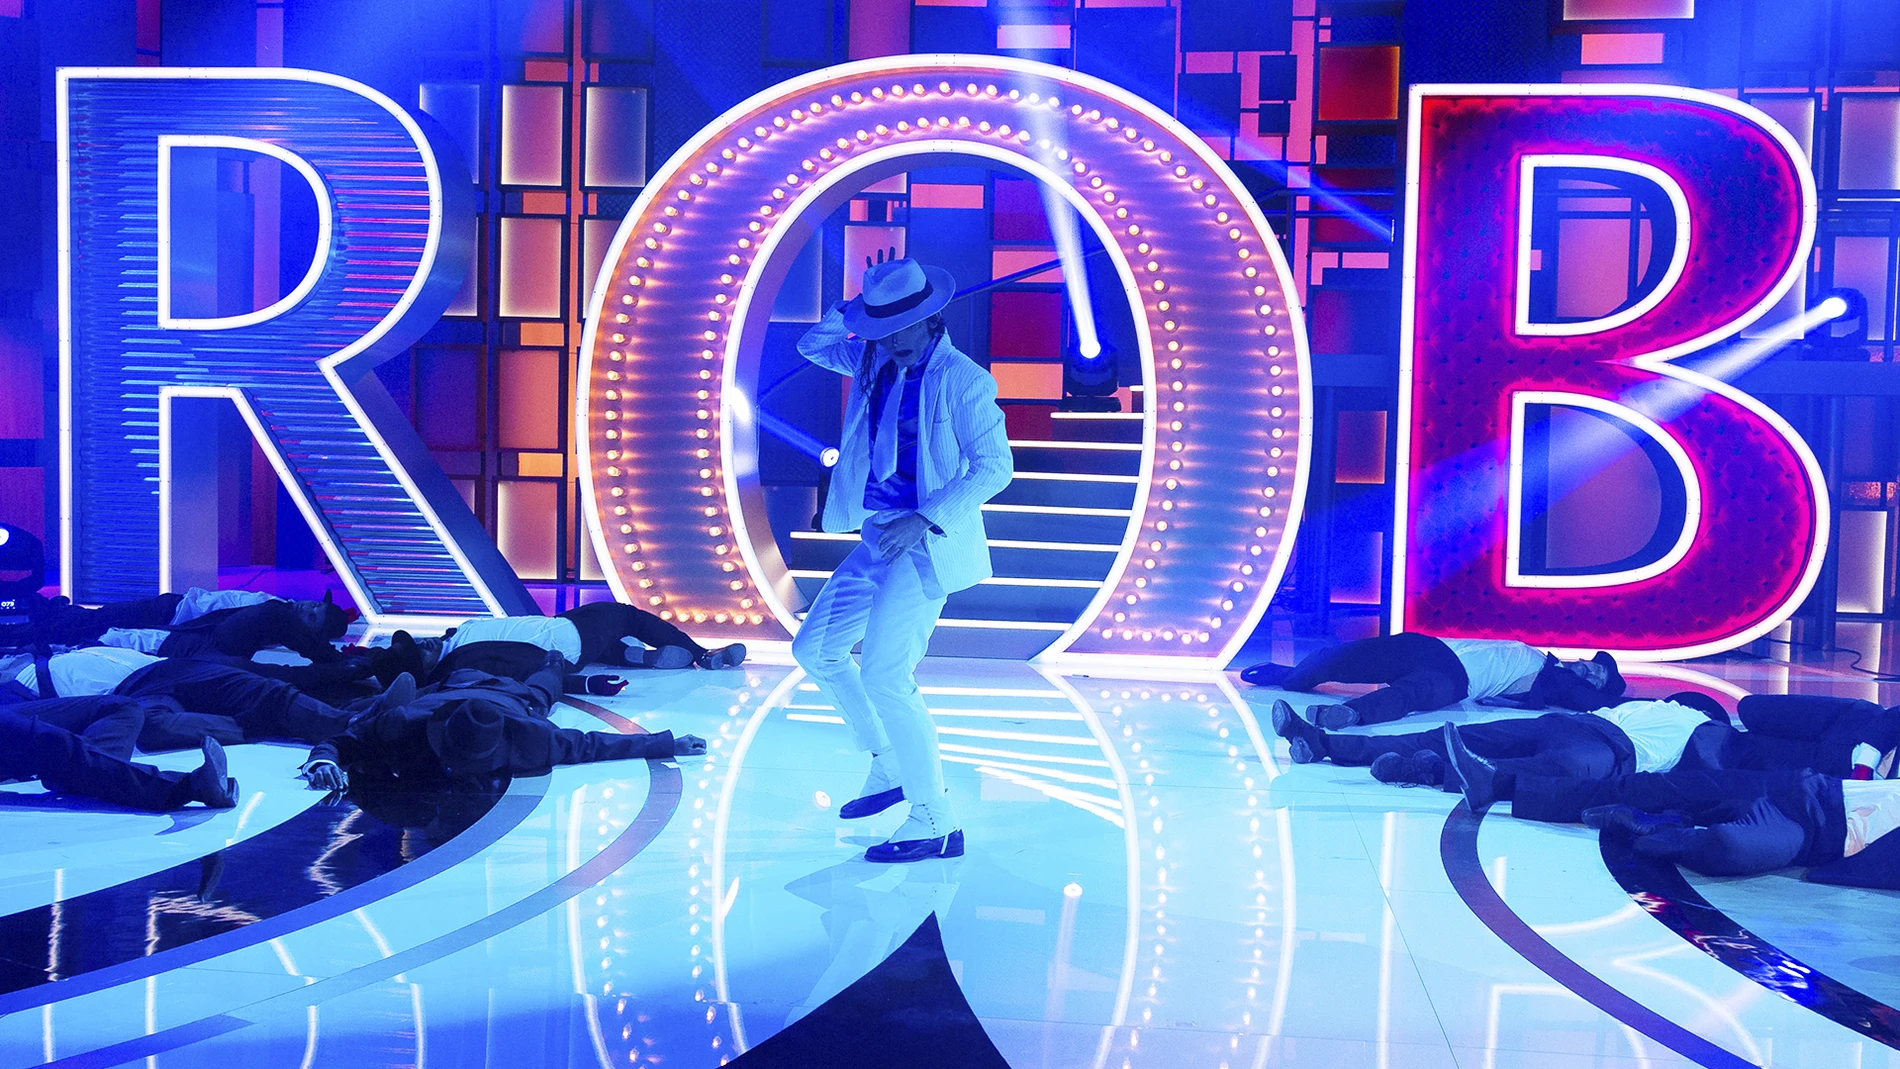 'Forever King of Pop' recrean una fantástica versión de 'Smooth Criminal' de Michael Jackson en 'La noche de Rober'